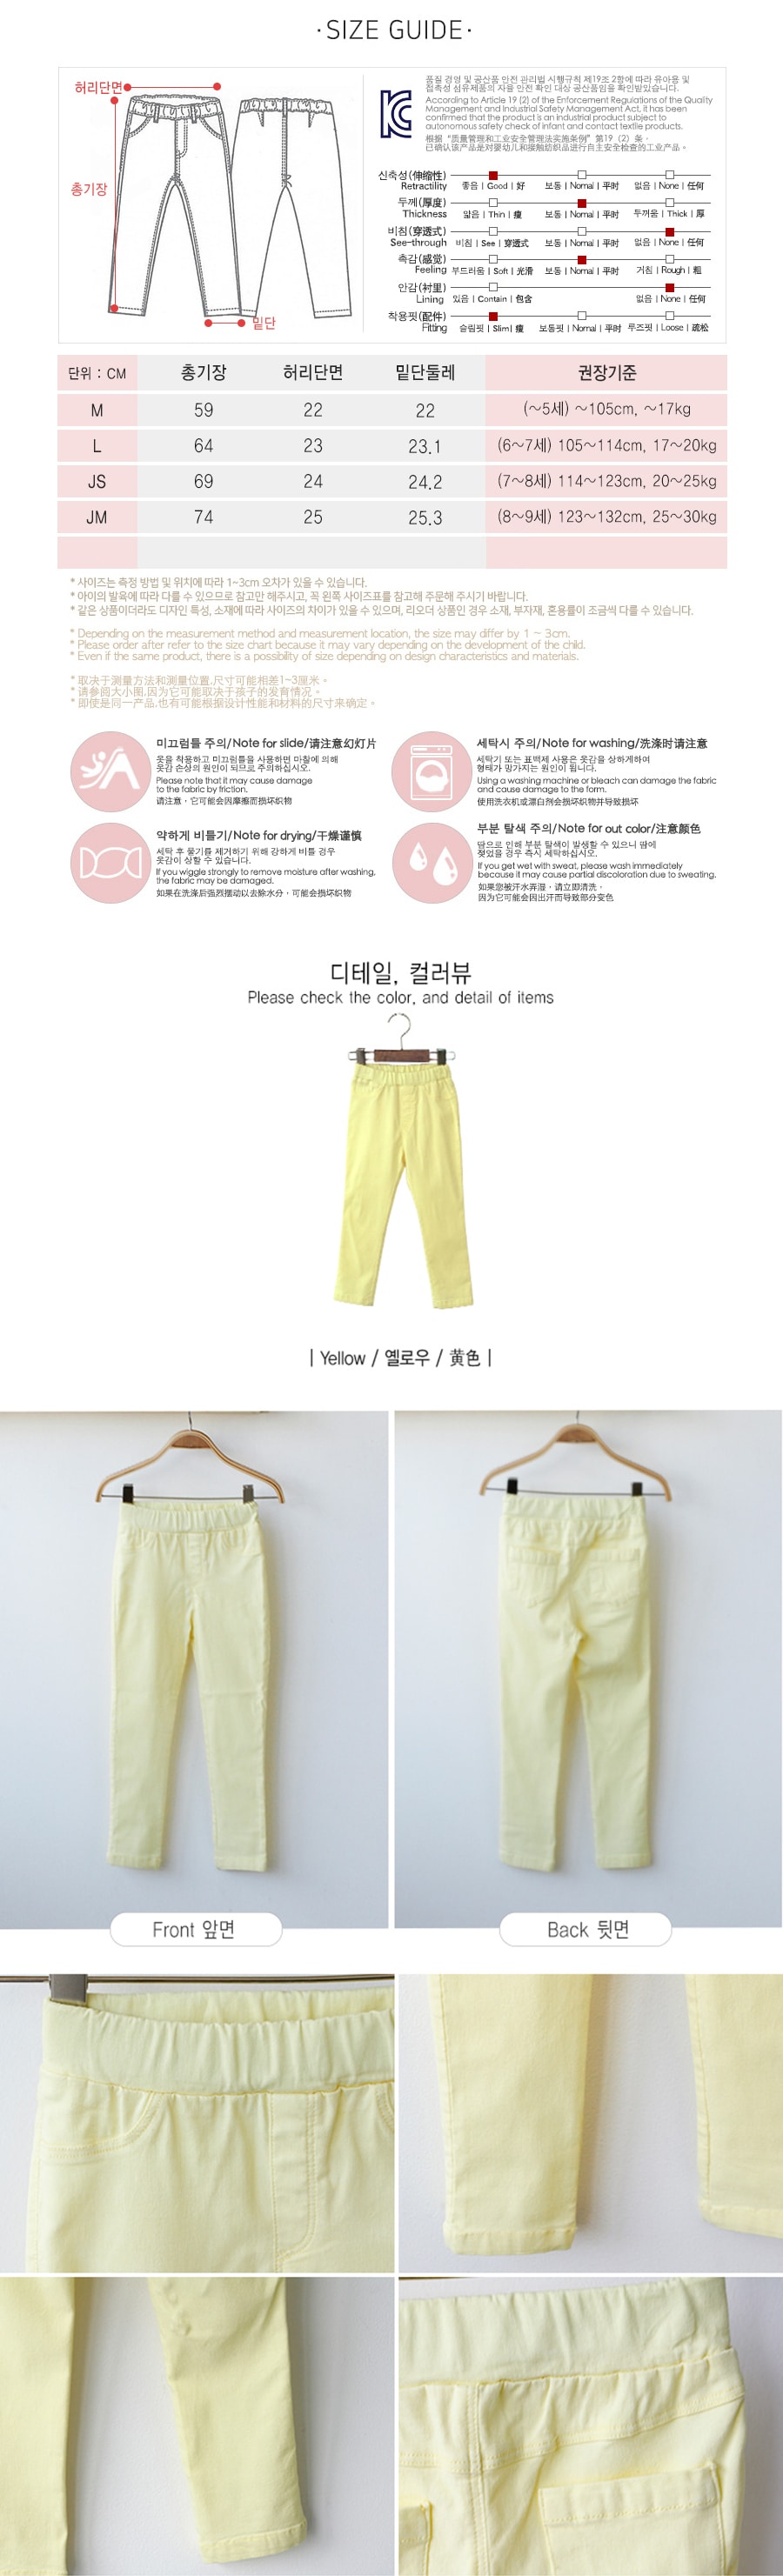 [韩国直邮] MODELAMI 女孩弹力裤 #黄色 JM(8-9岁)